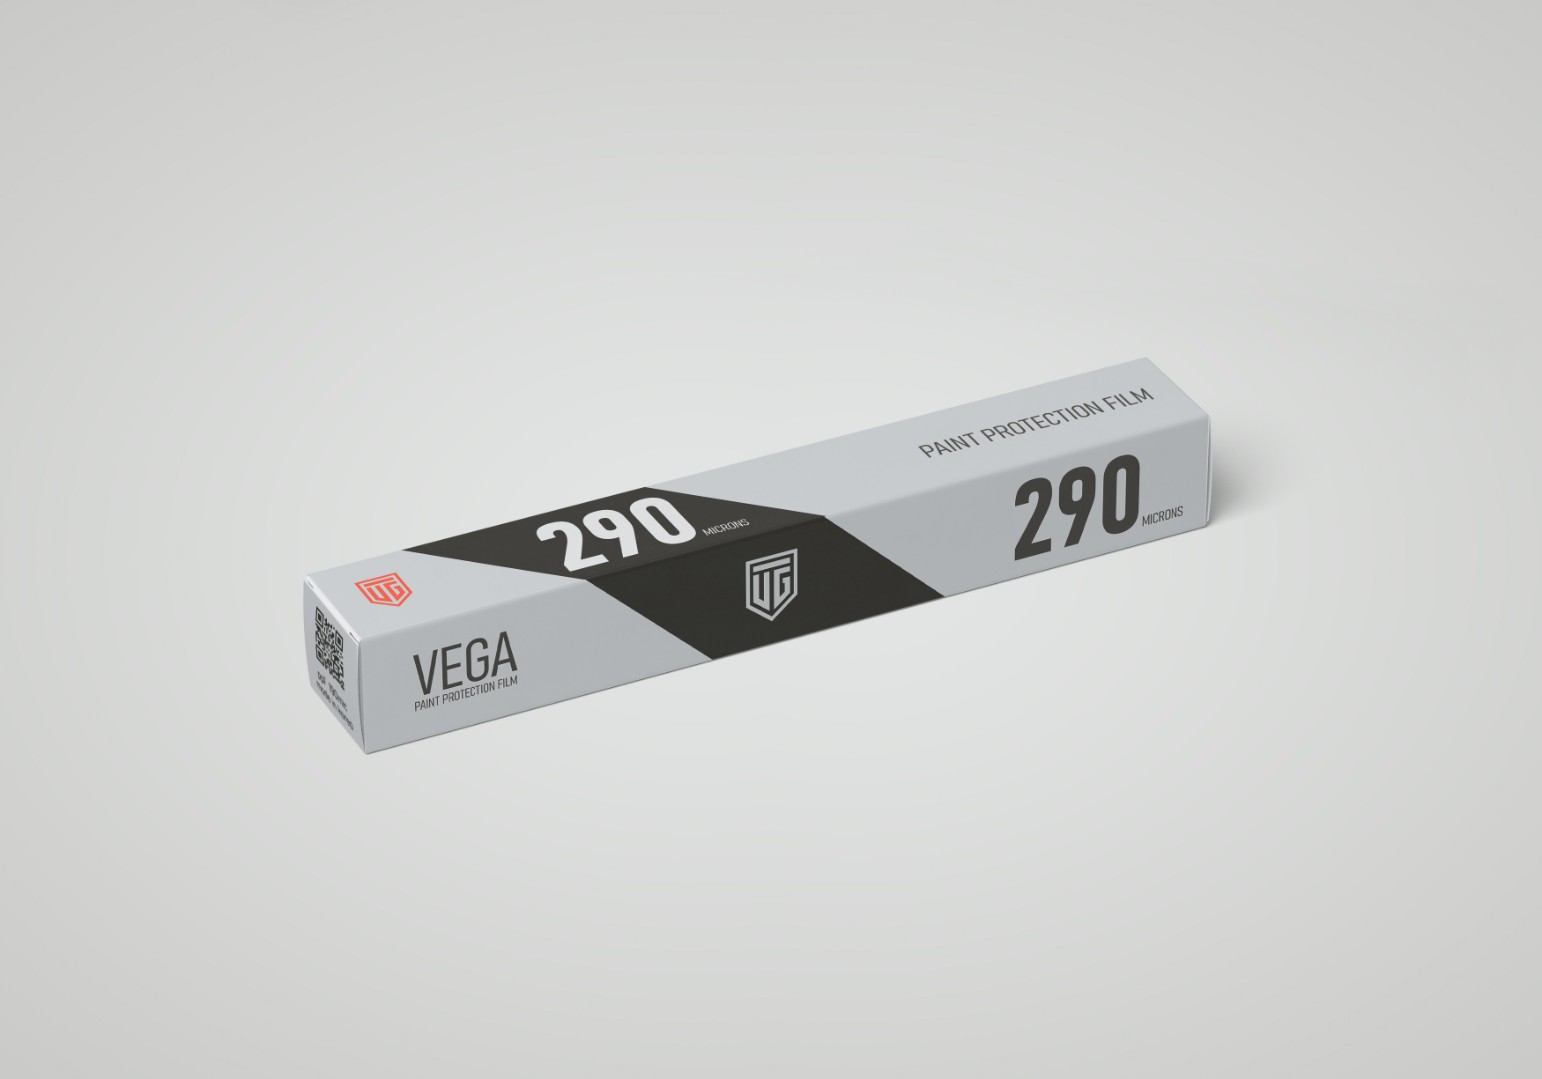 Глянцевая полиуретановая пленка защитная пленка VEGA 290 HT series для оклейки авто купить в Москве